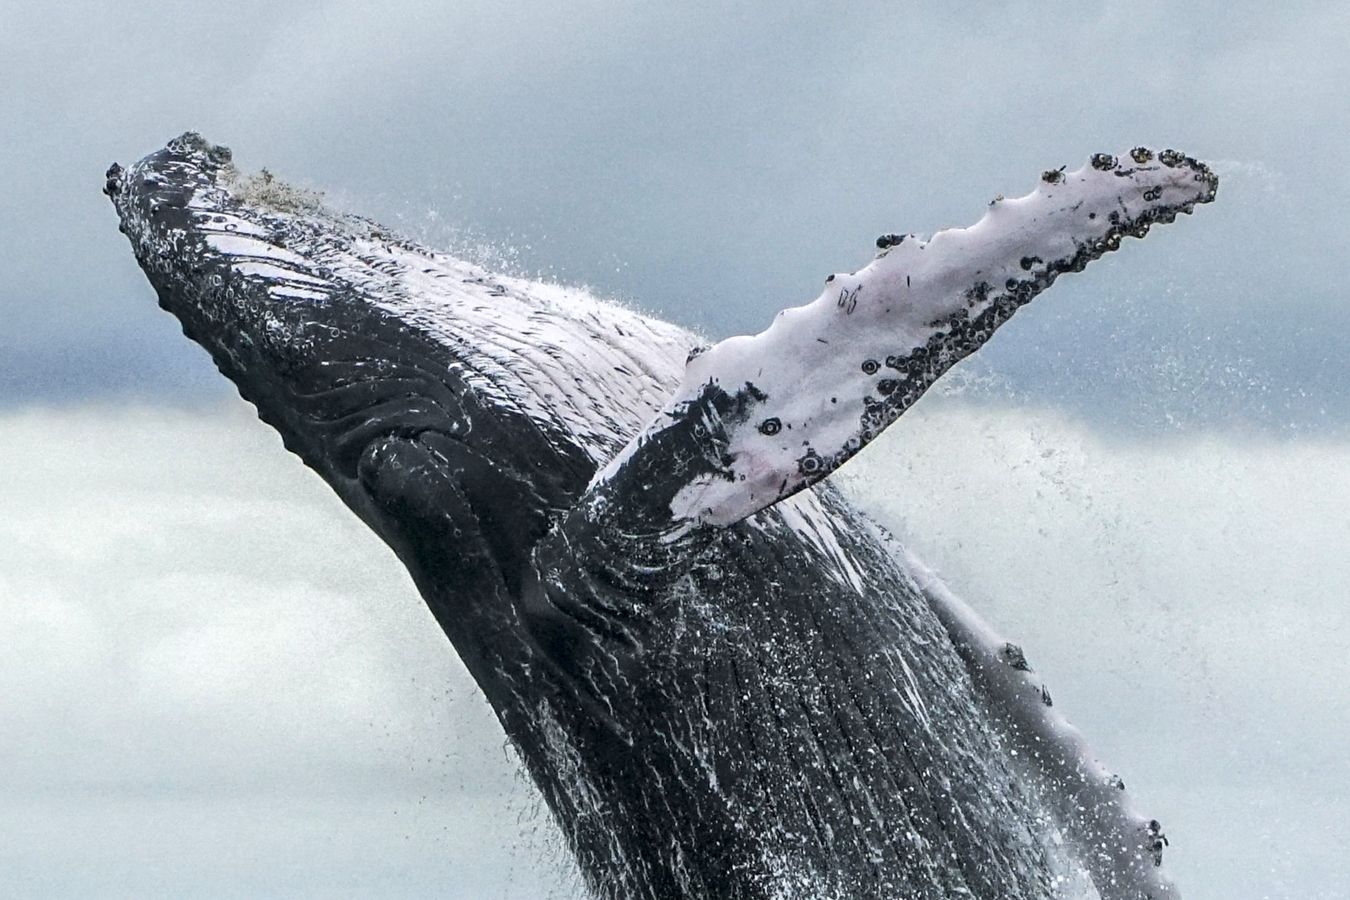 สัตว์ วาฬหลังค่อม Humpback whale